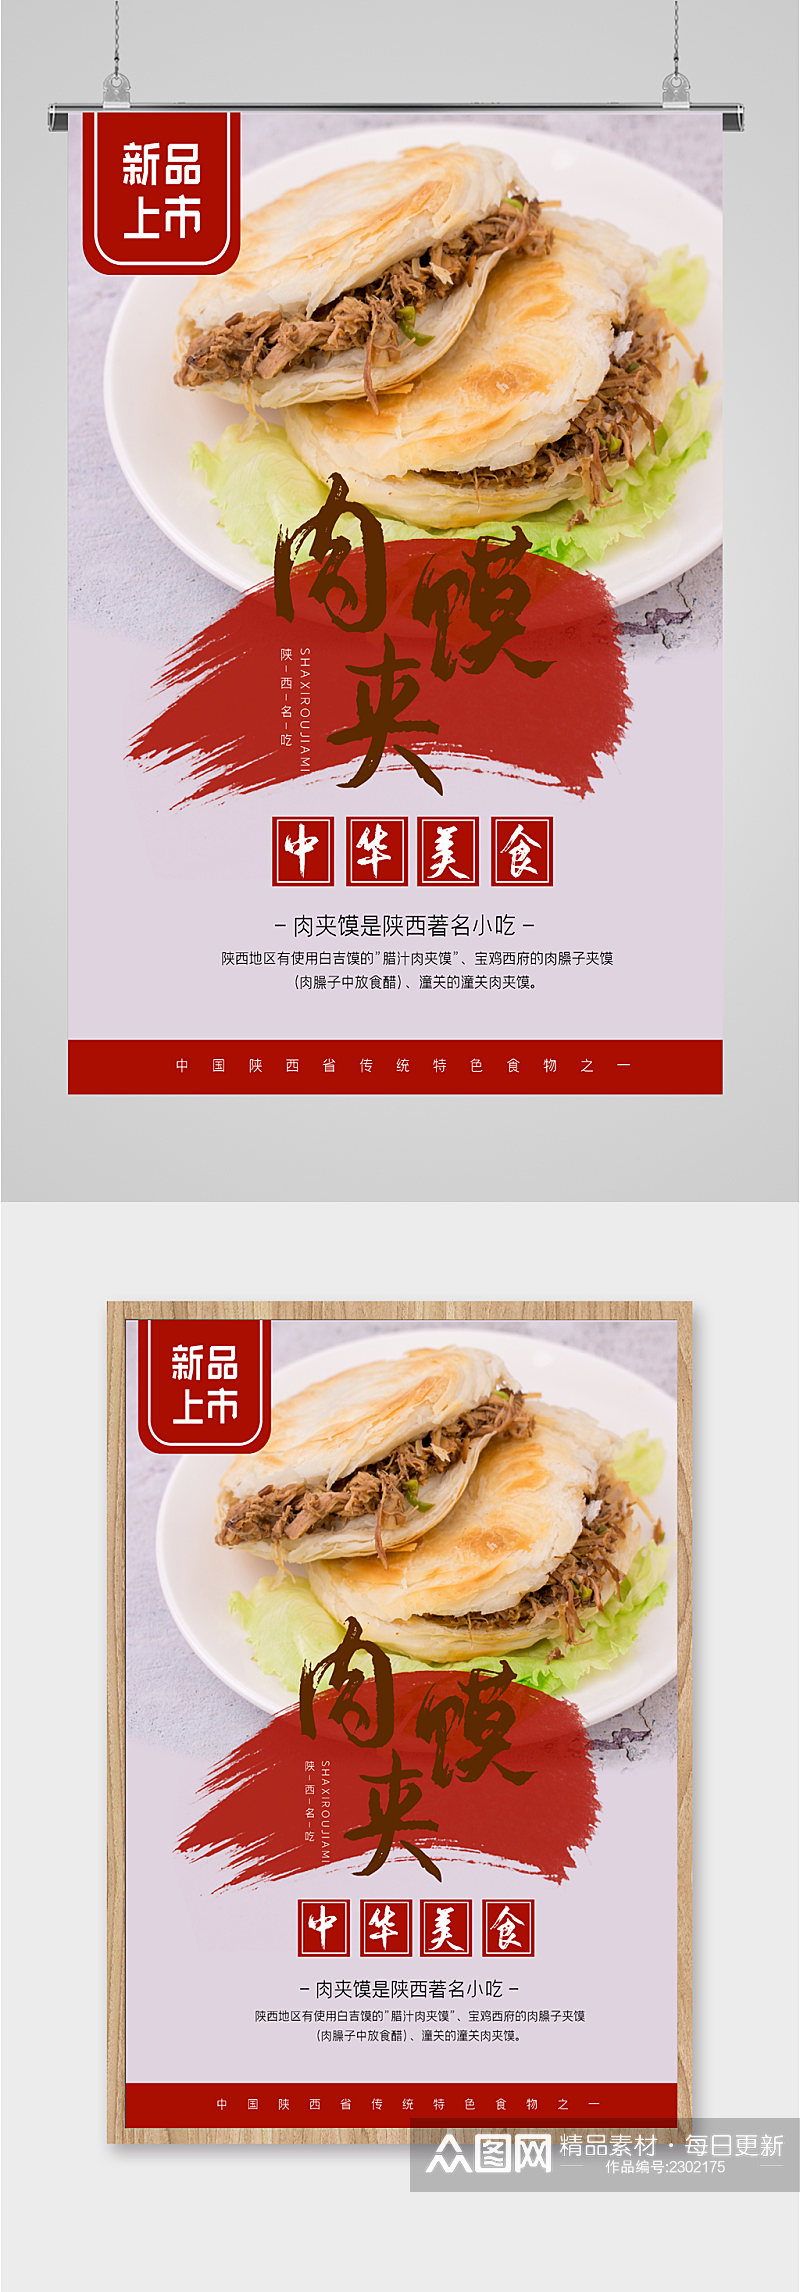 肉夹馍中华美食海报素材